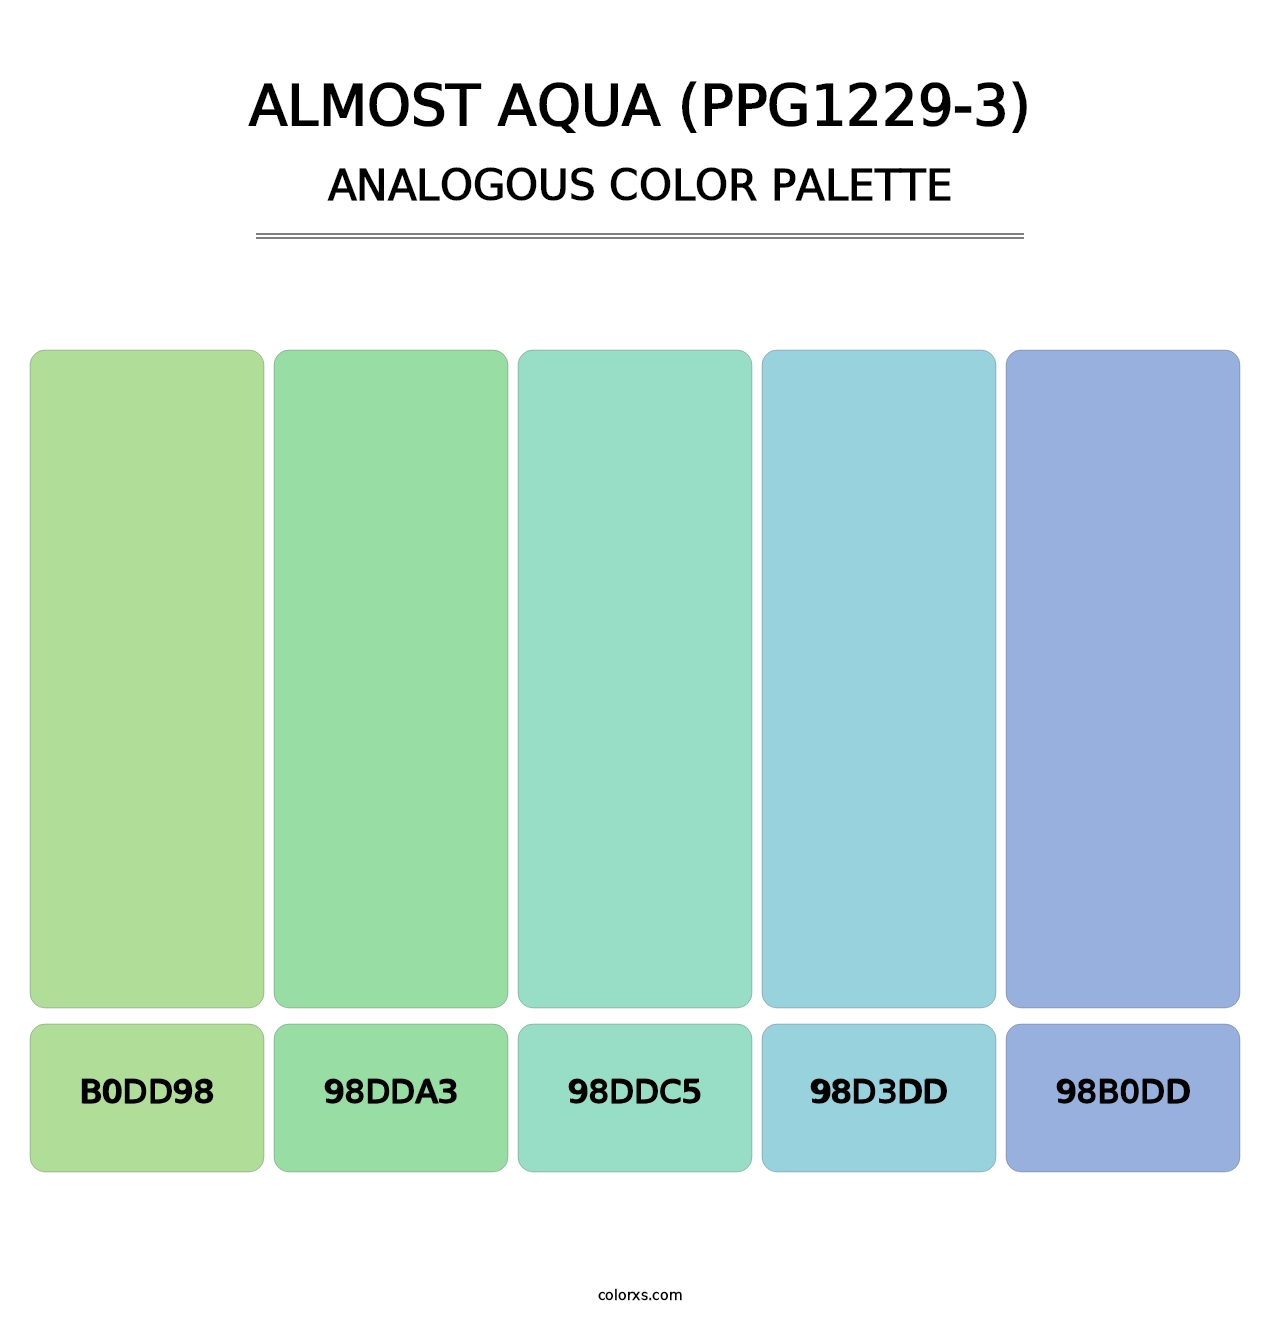 Almost Aqua (PPG1229-3) - Analogous Color Palette